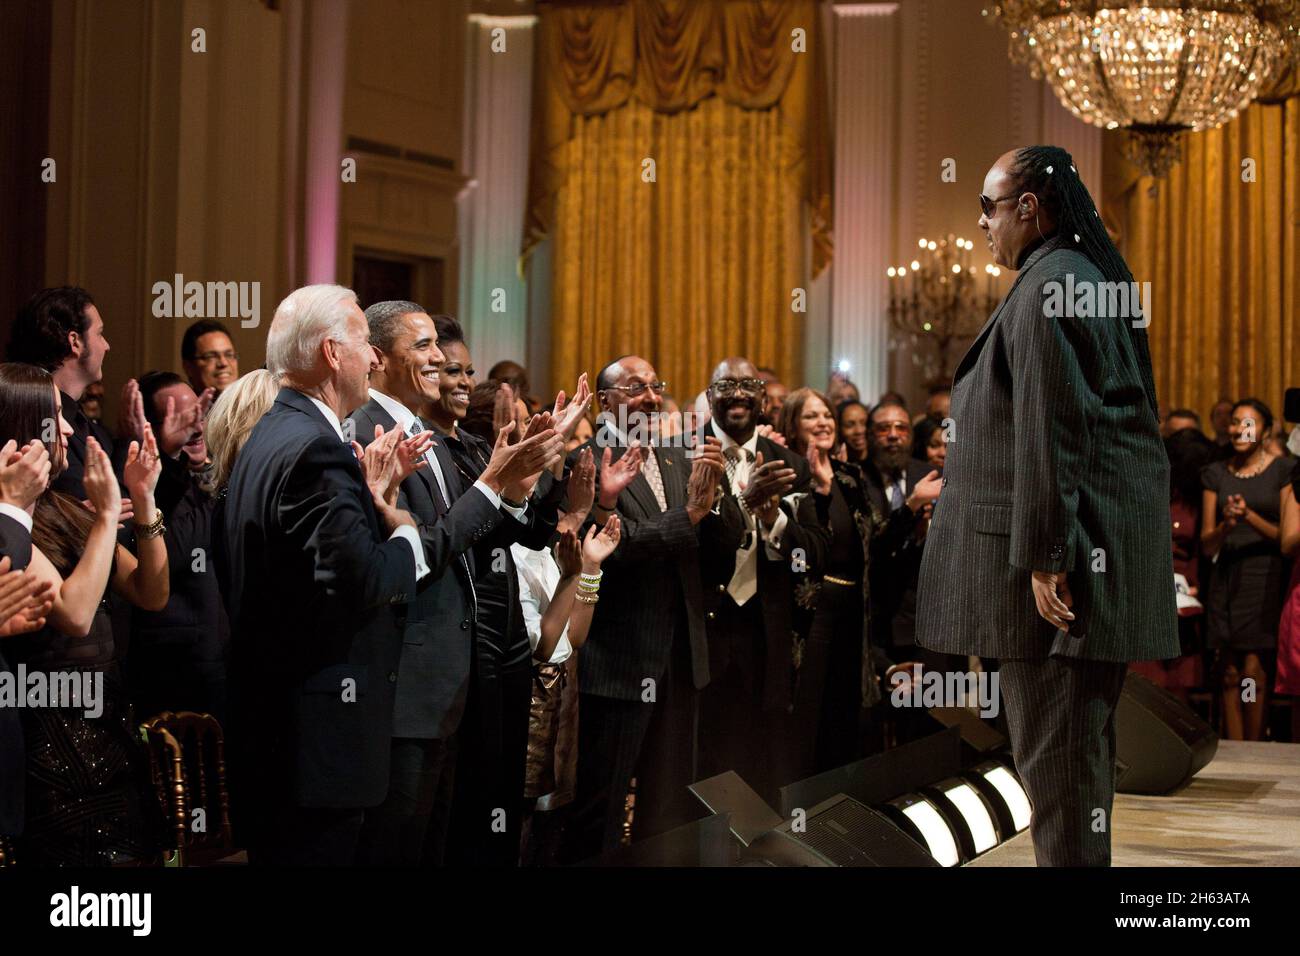 Der Plattenkünstler Stevie Wonder erhält eine Standing Ovation während des Konzerts „The Motown Sound: In Performance at the White House“, das den Black History Month und das Vermächtnis von Motown Records feiert, am 24. Februar 2011 im East Room des Weißen Hauses. Stockfoto